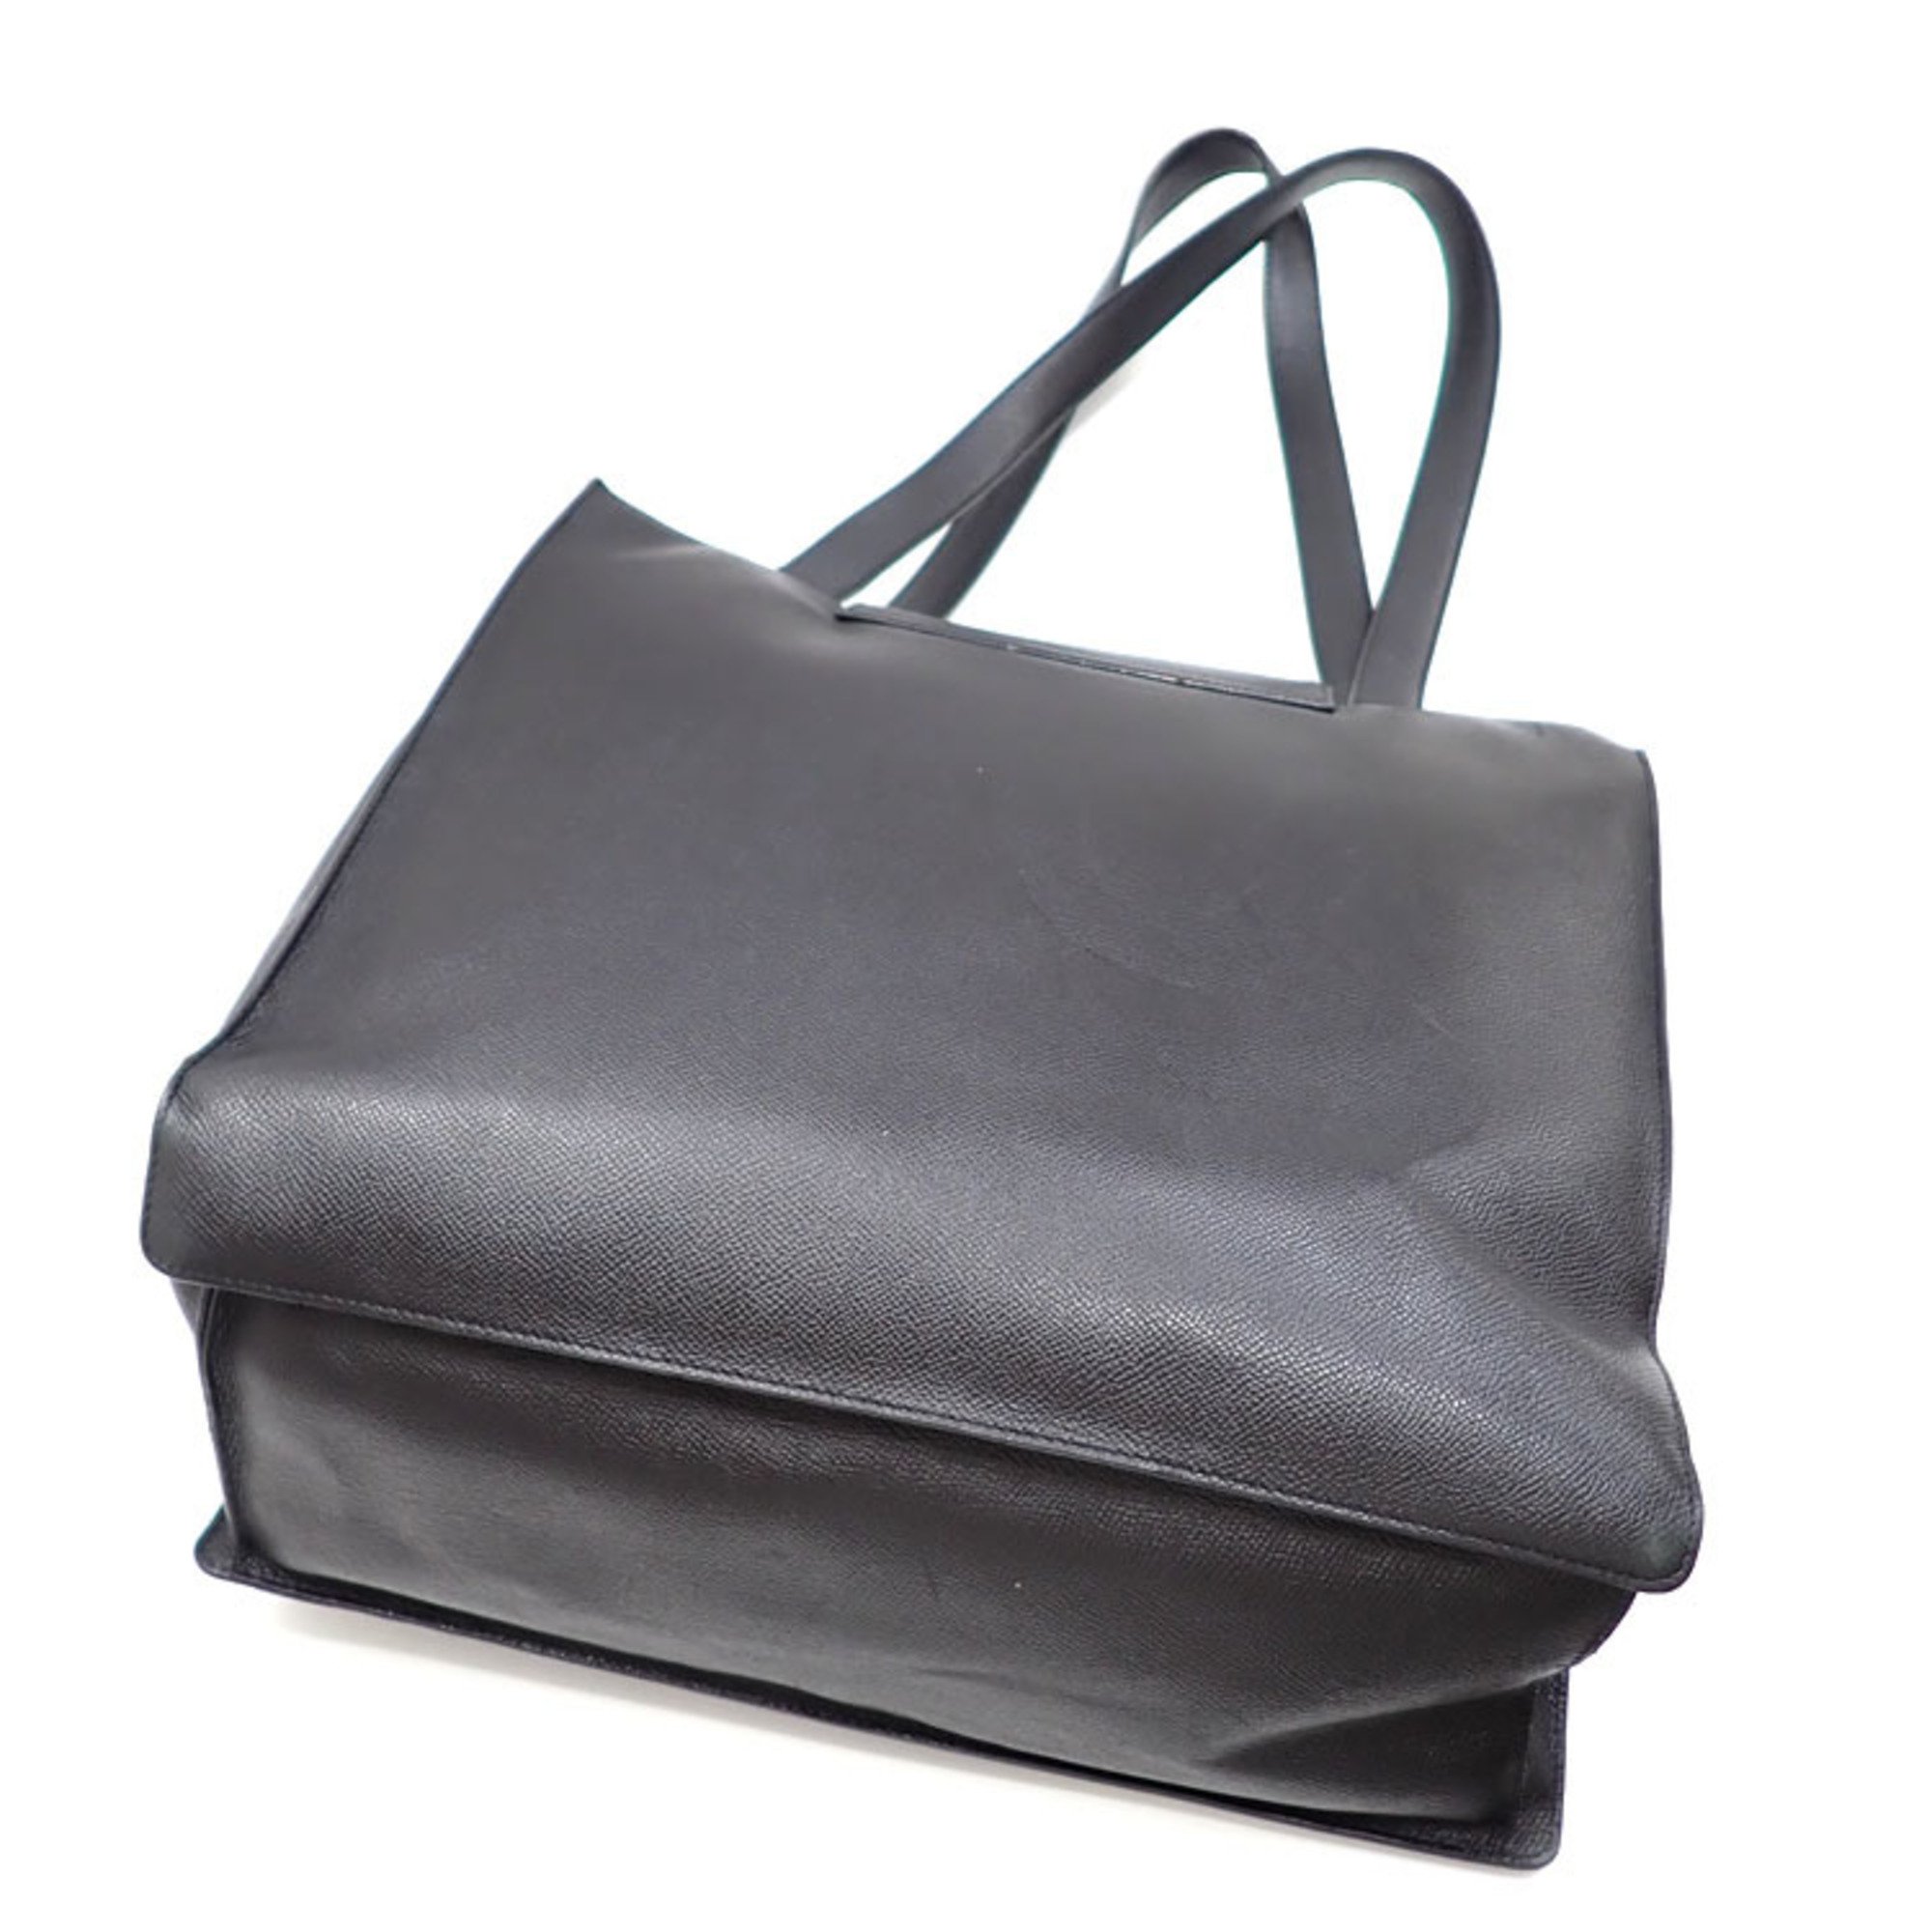 Bvlgari Bulgari tote bag, black, leather, for women, men, unisex, shoulder